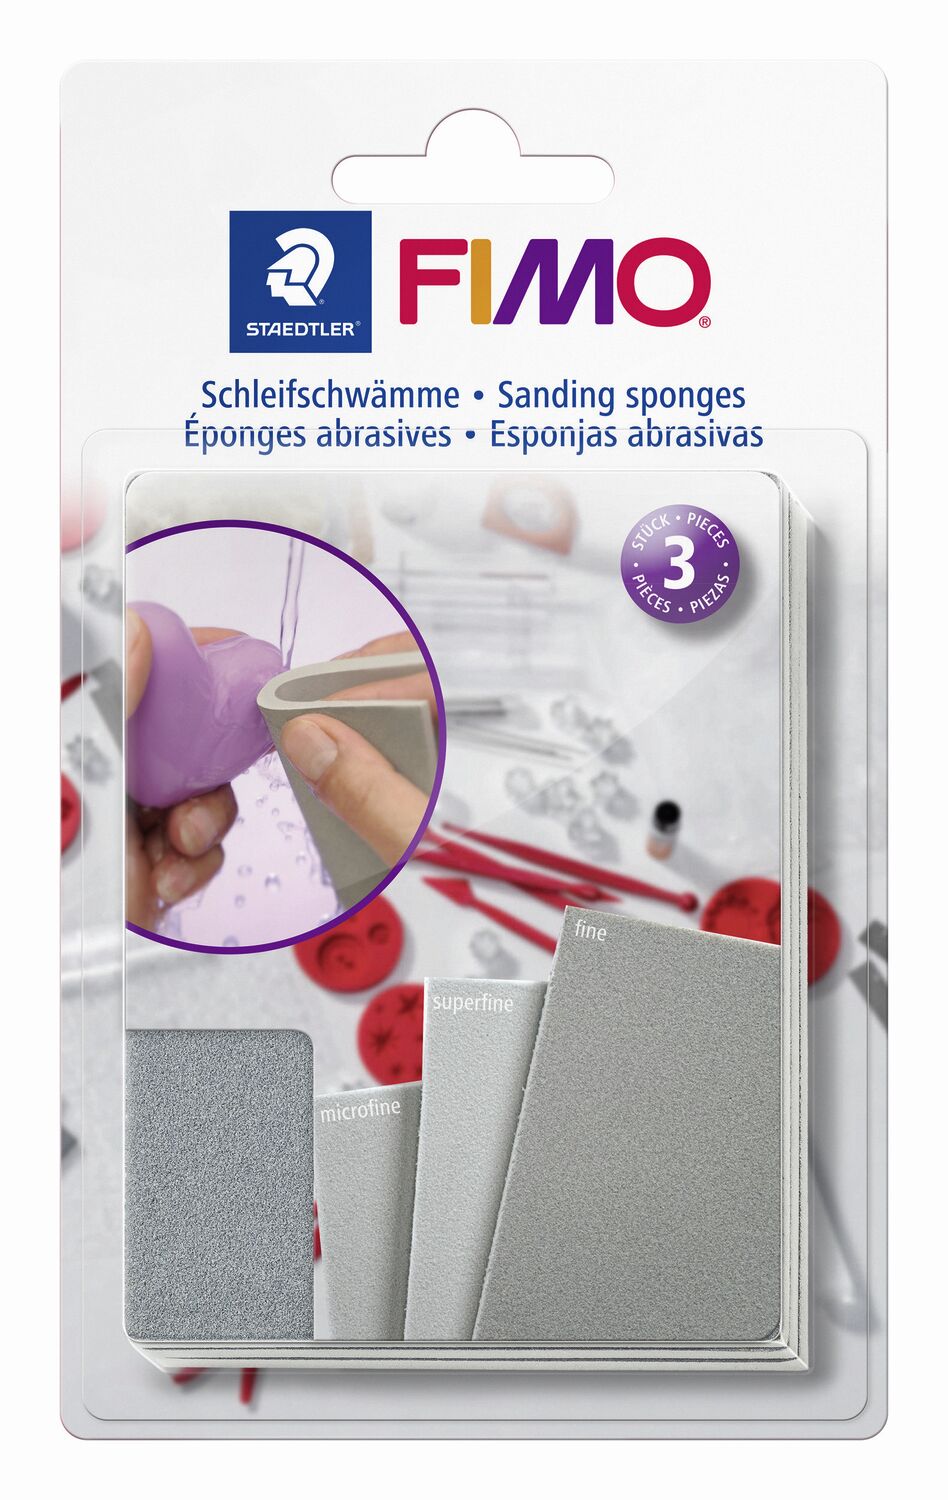 FIMO® 8700 08 - Juego de pulido y esmerilado